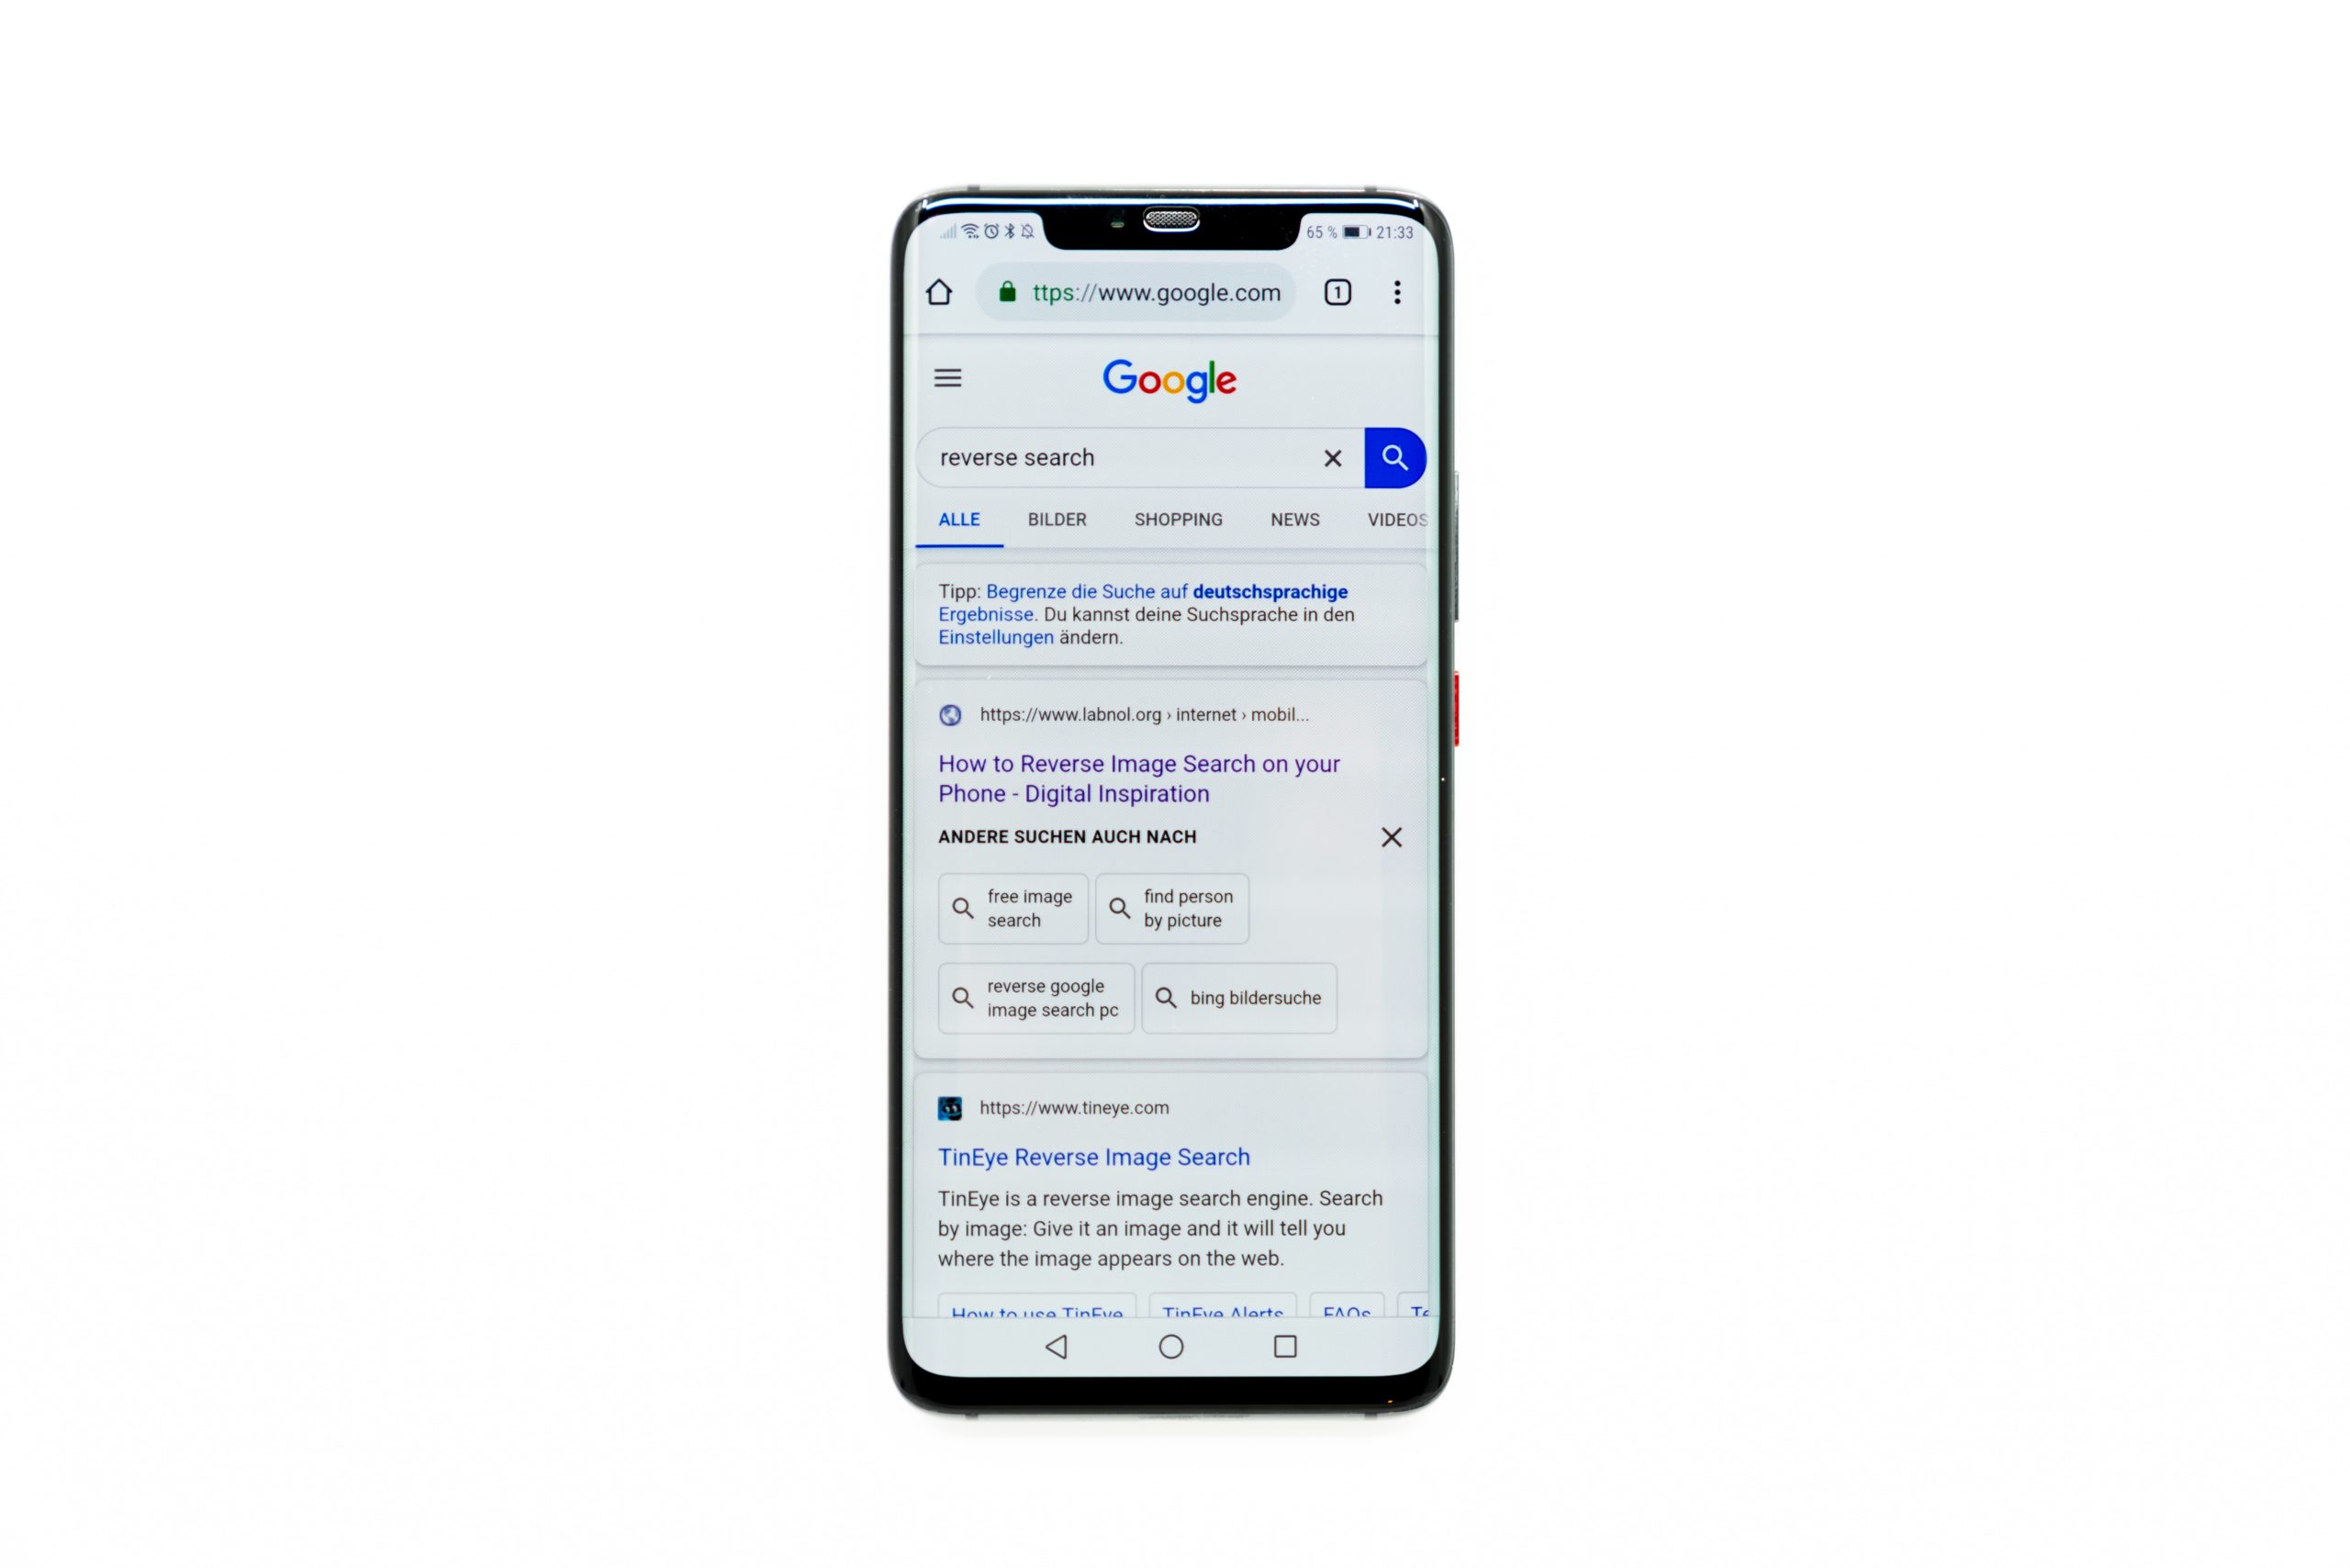 etiquetas de título que se ven en la pantalla de un teléfono inteligente que muestra la página de resultados de Google